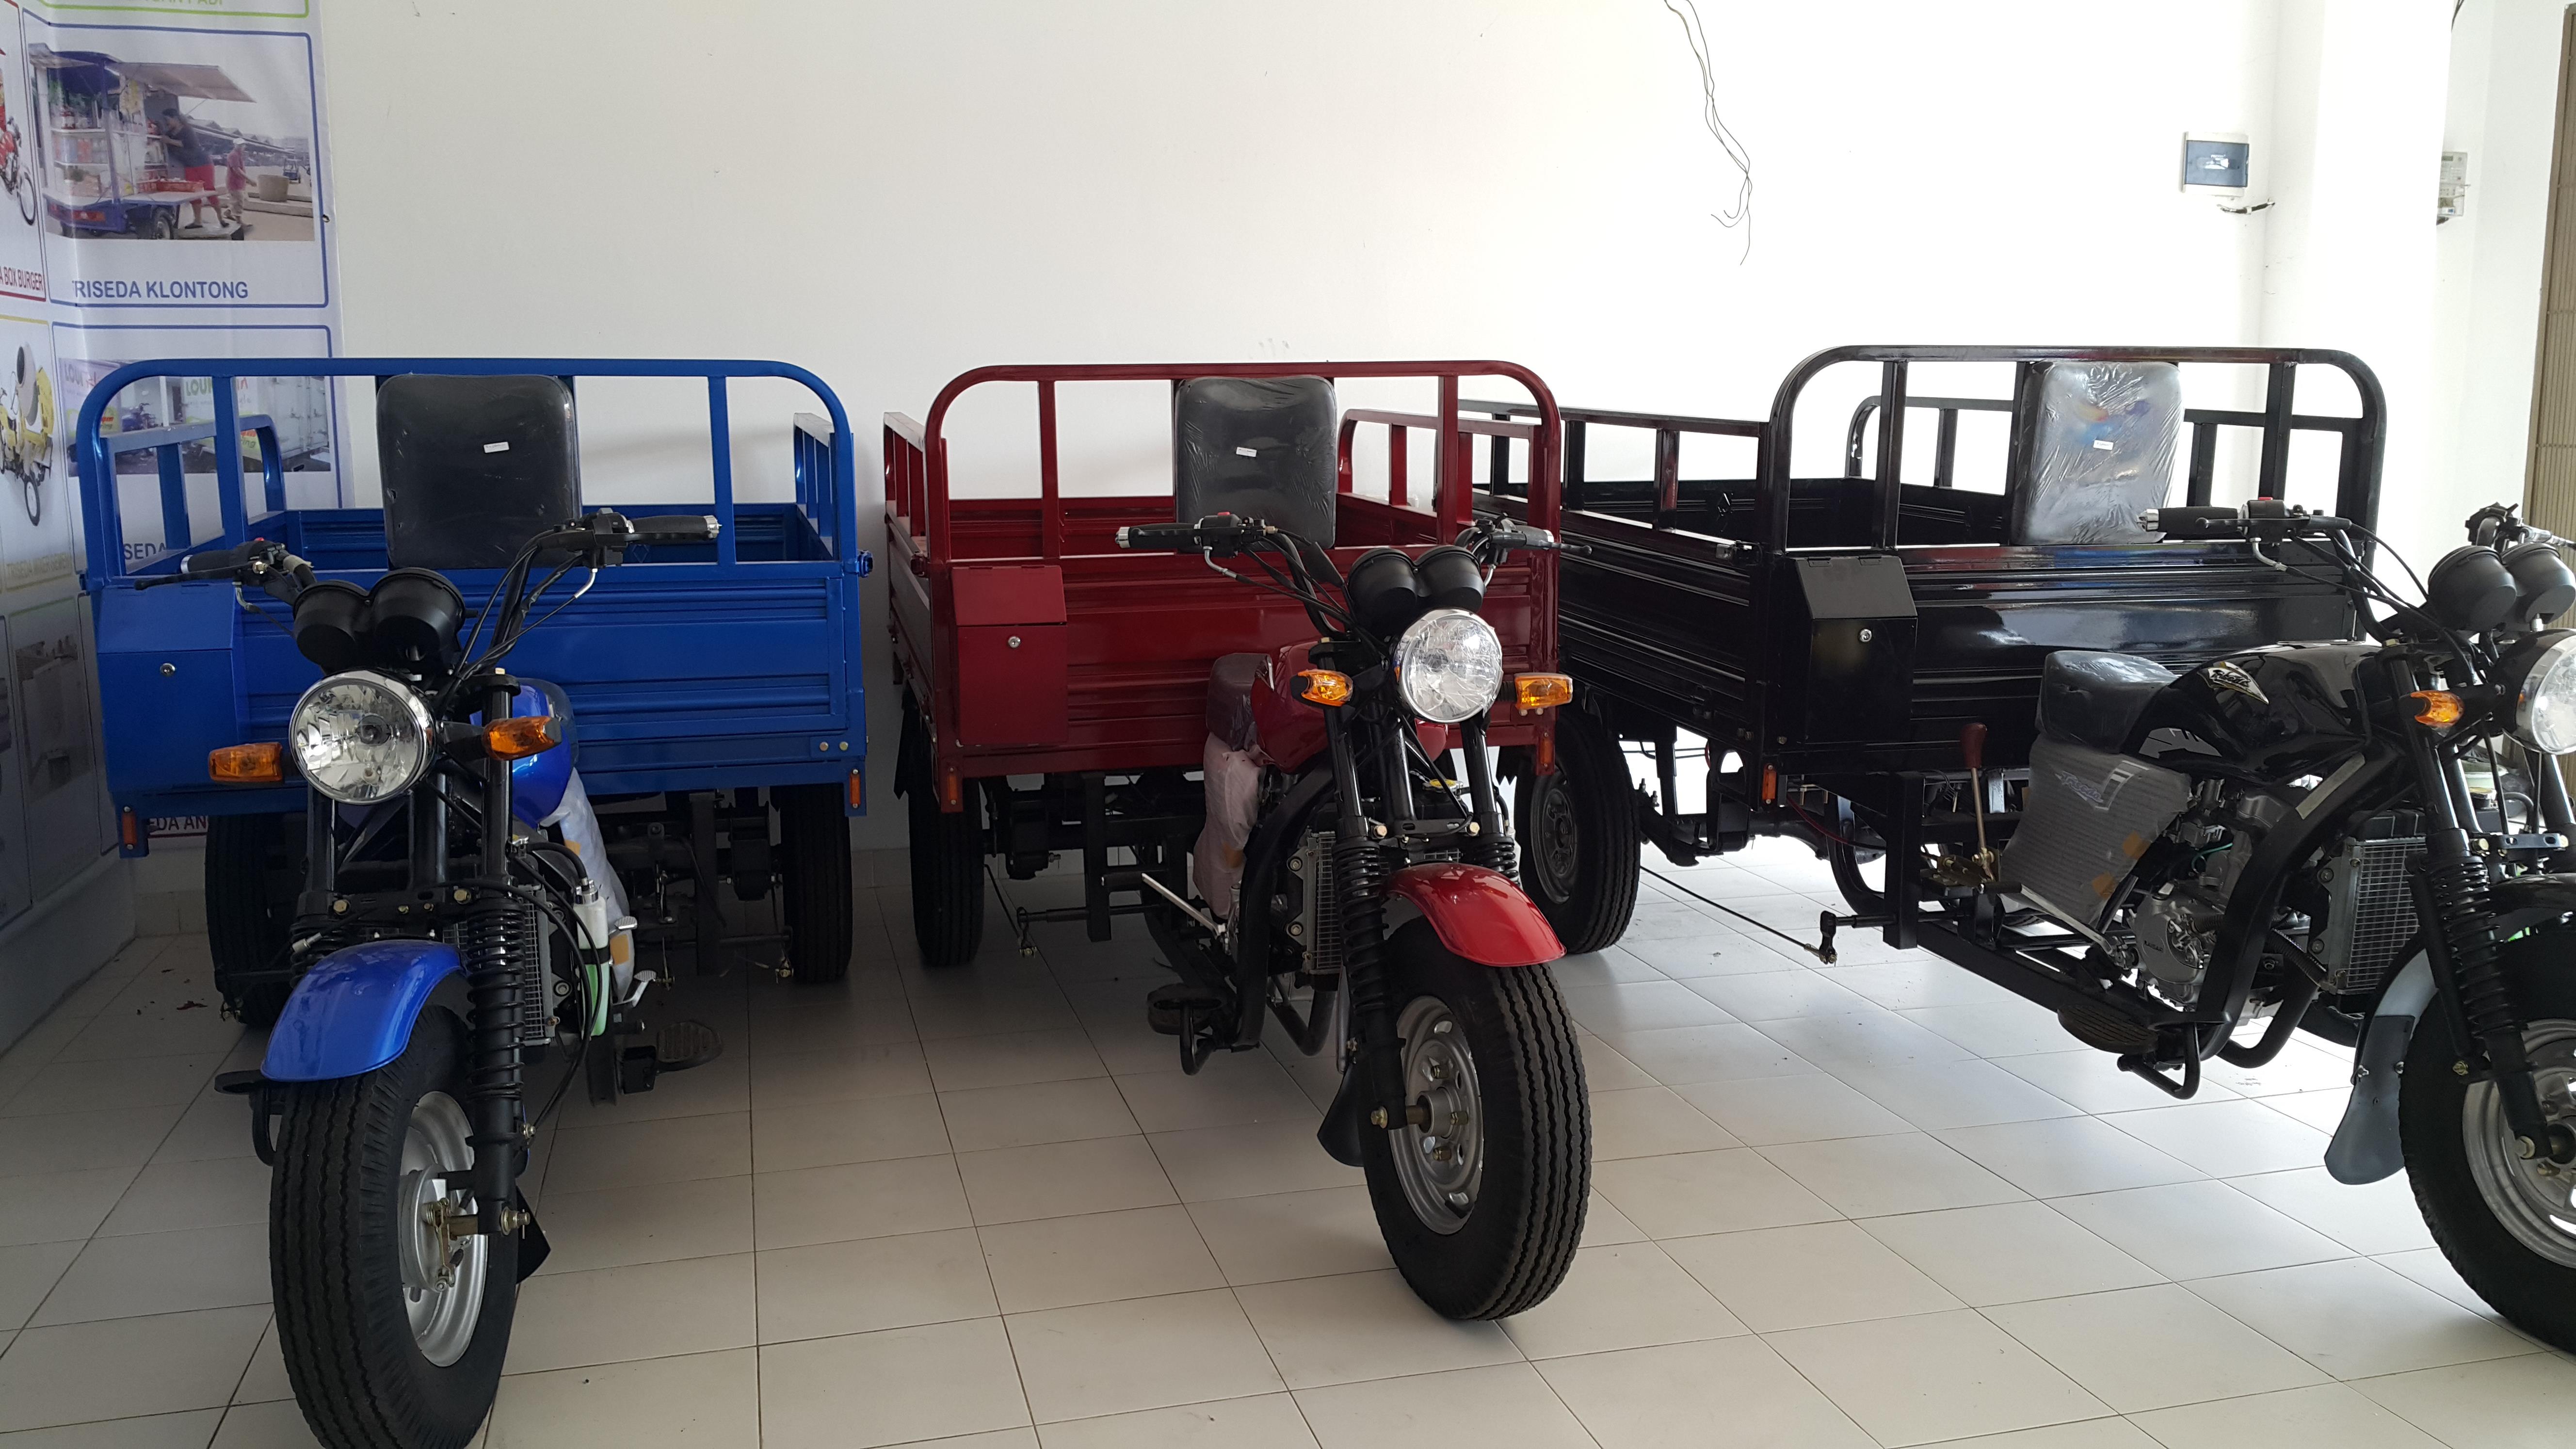 Jual Sepeda Motor Roda Tiga Harga Murah Kota Tangerang 